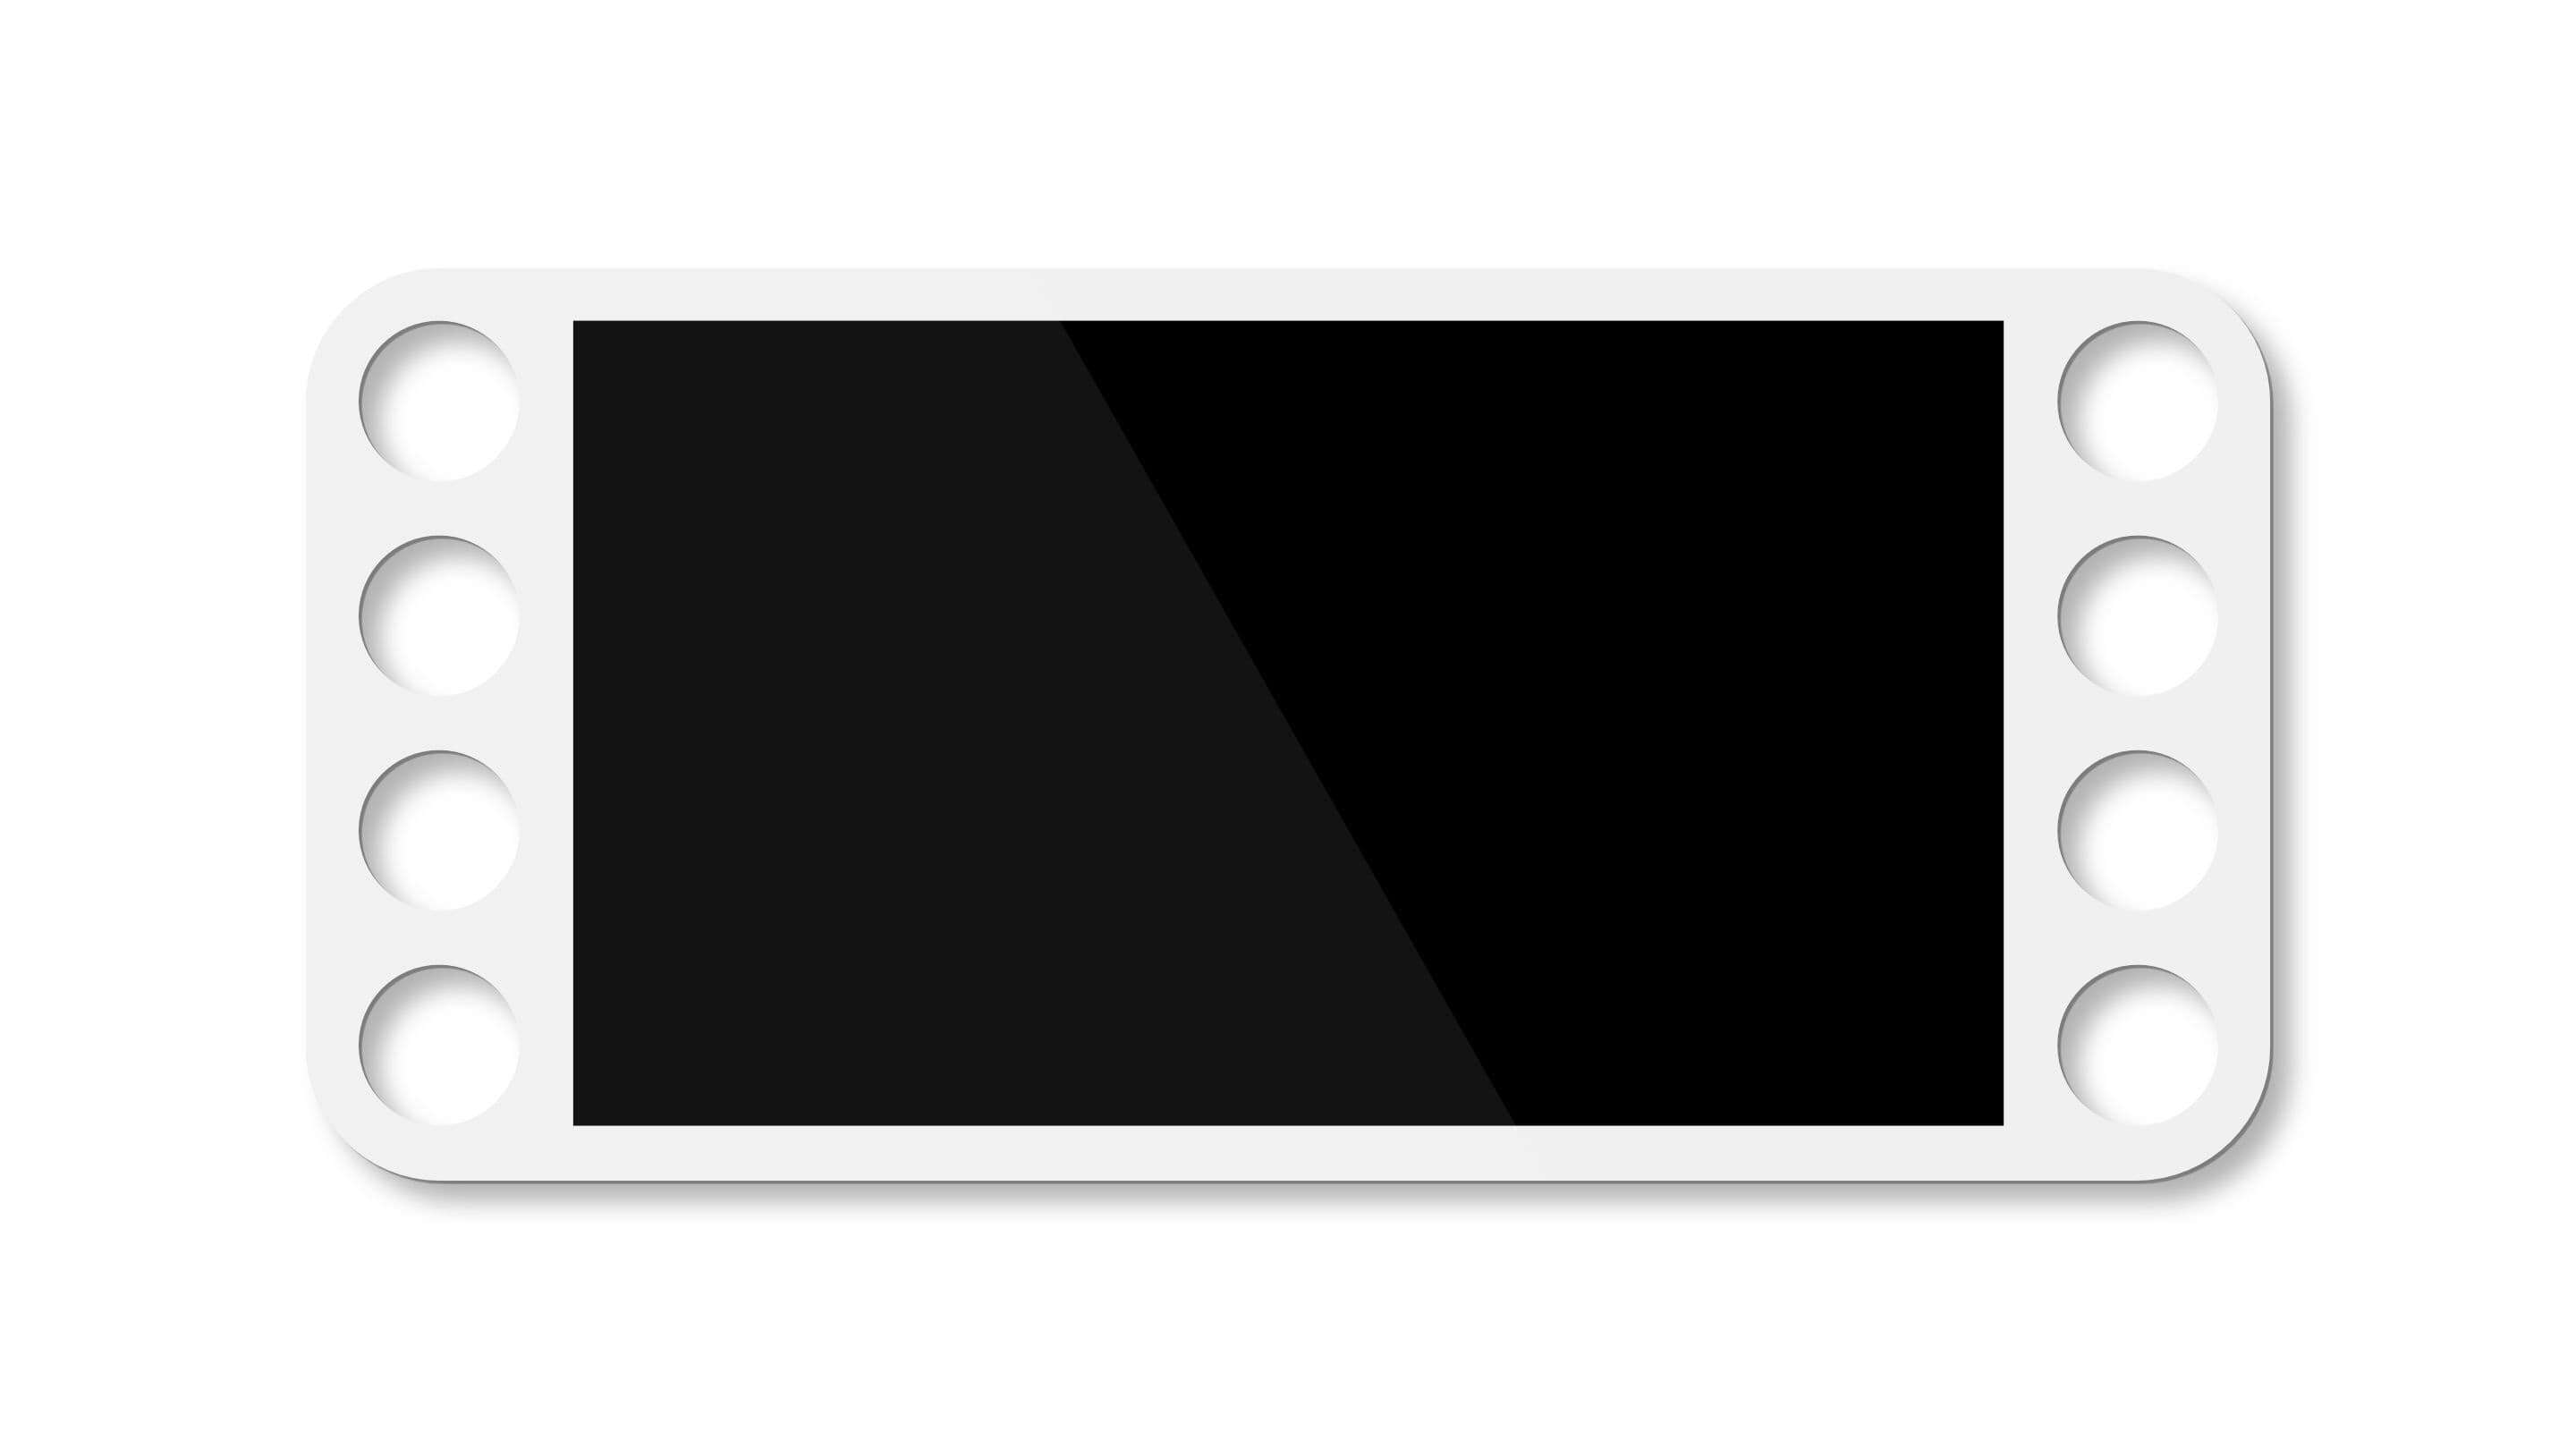 터치 스크린 - 흰색 폴리카보네이트 터치 스크린 보세품 의료 흰색 테두리가 있는 검은색 직사각형 물체